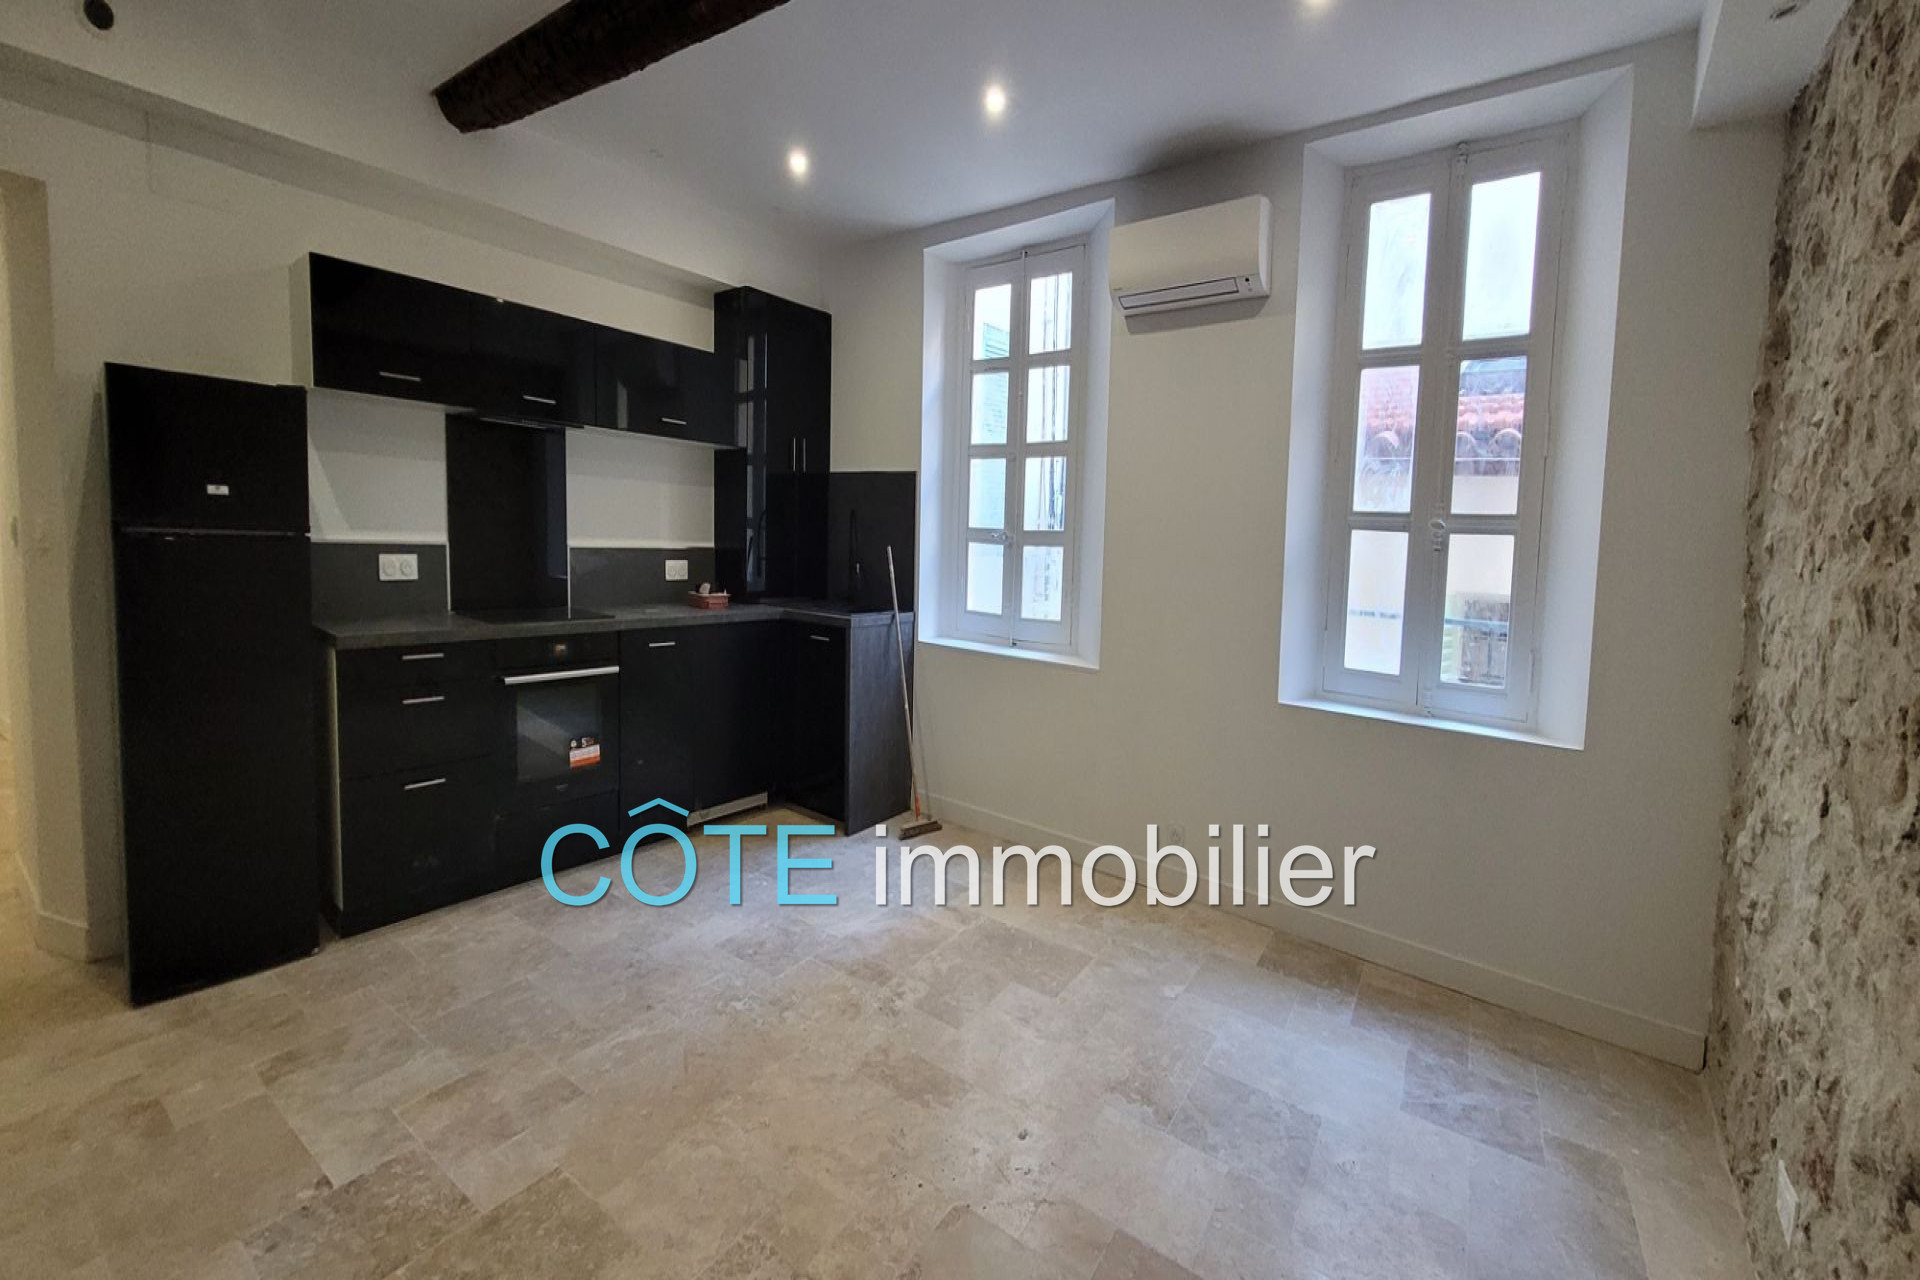 Vente Appartement 50m² à Antibes (06600) - Côte Immobilier